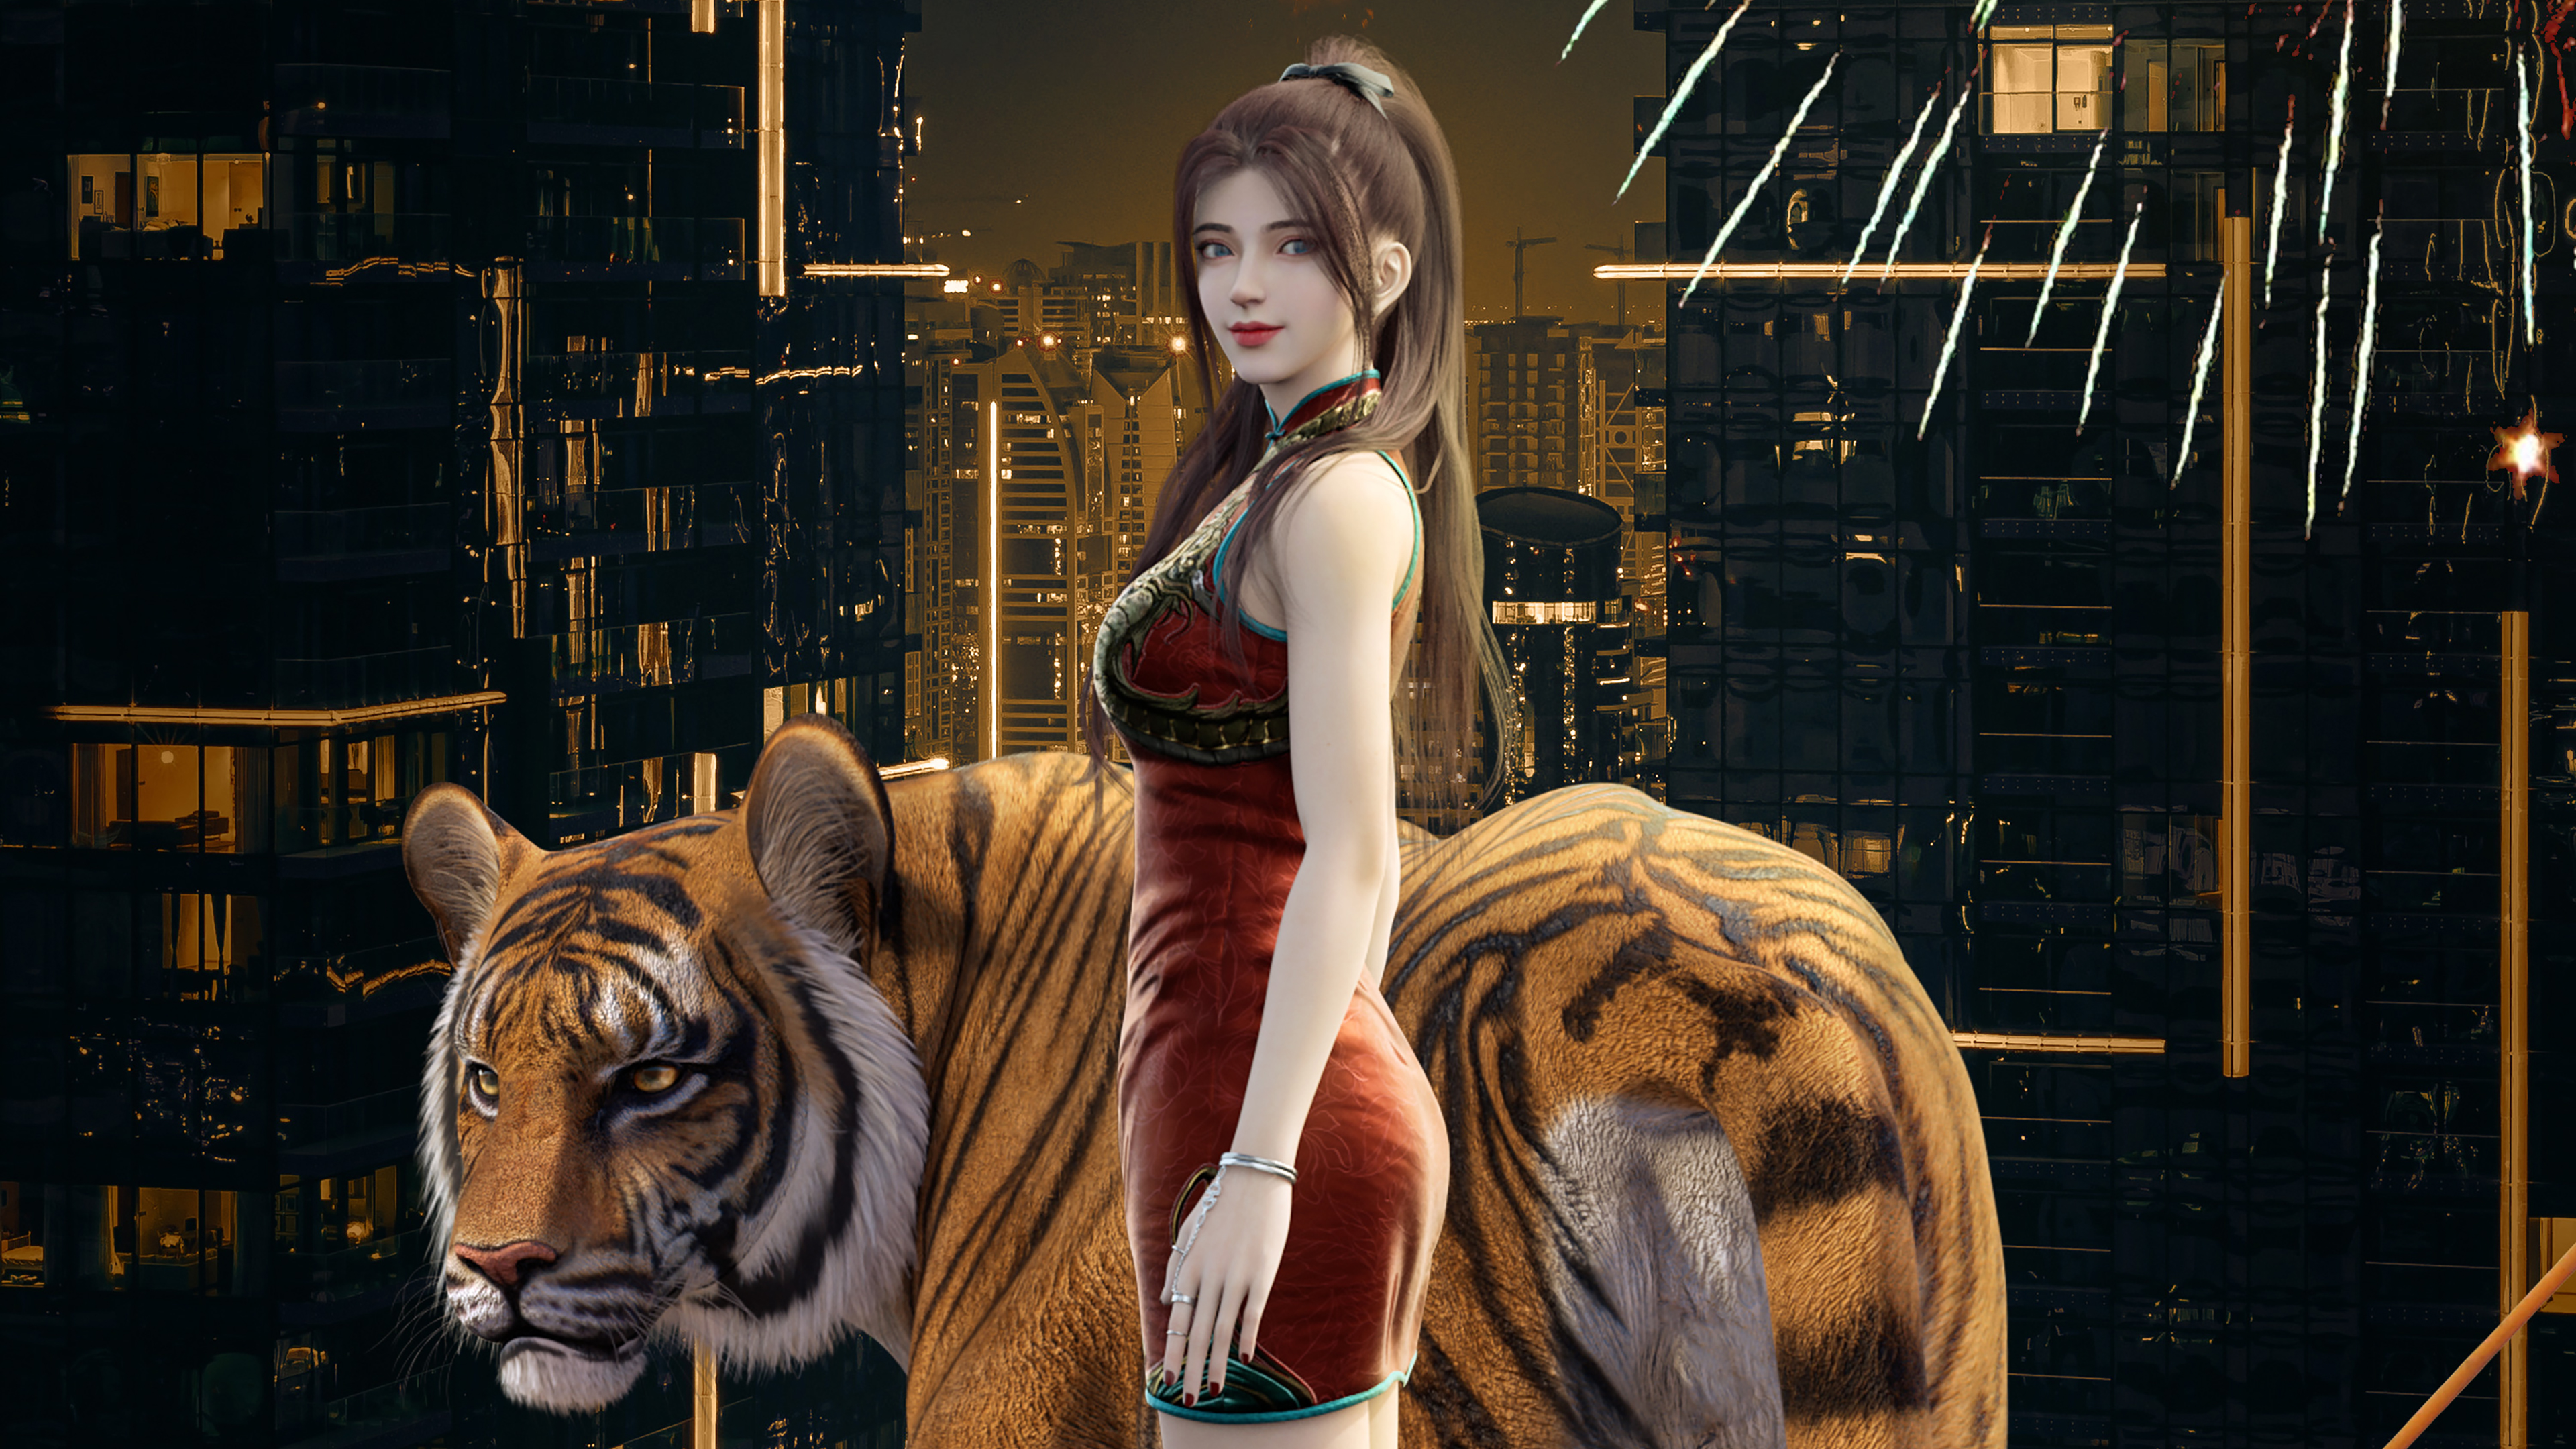 People 3840x2160 artwork women digital art tiger animals mammals big cats red dress brunette red lipstick long hair